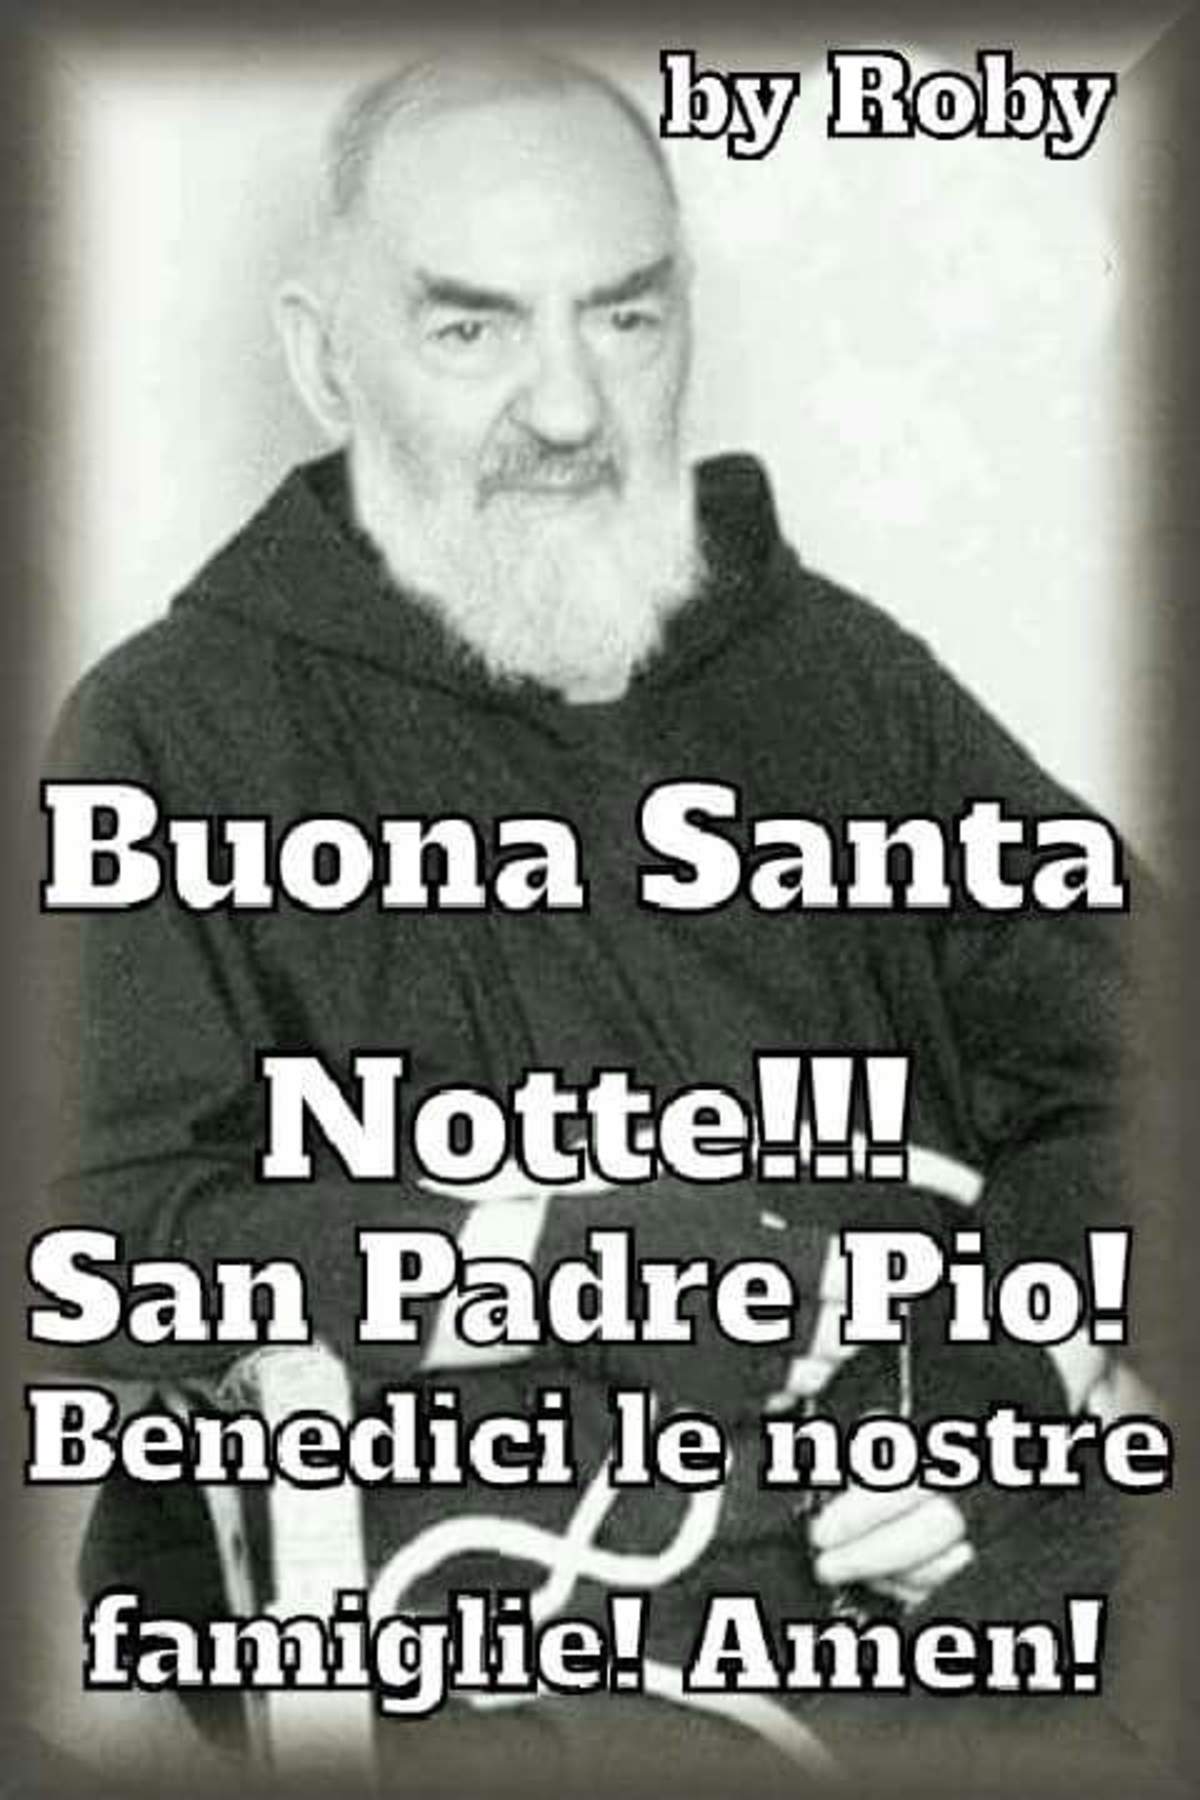 Immagini di Buonanotte con Padre Pio